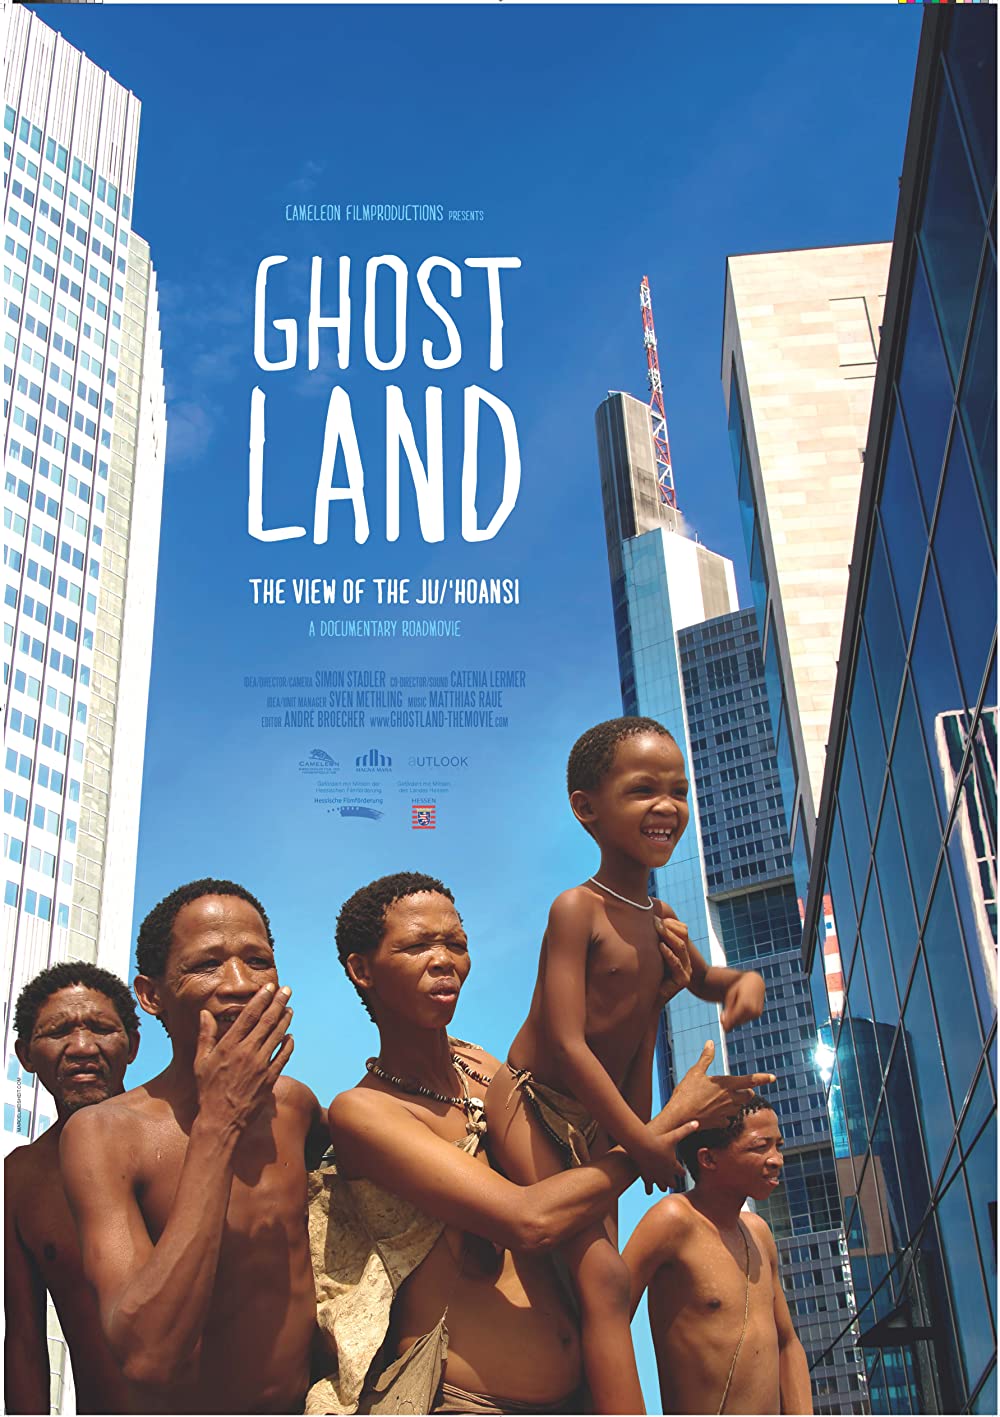 Filmbeschreibung zu Ghostland - Reise ins Land der Geister